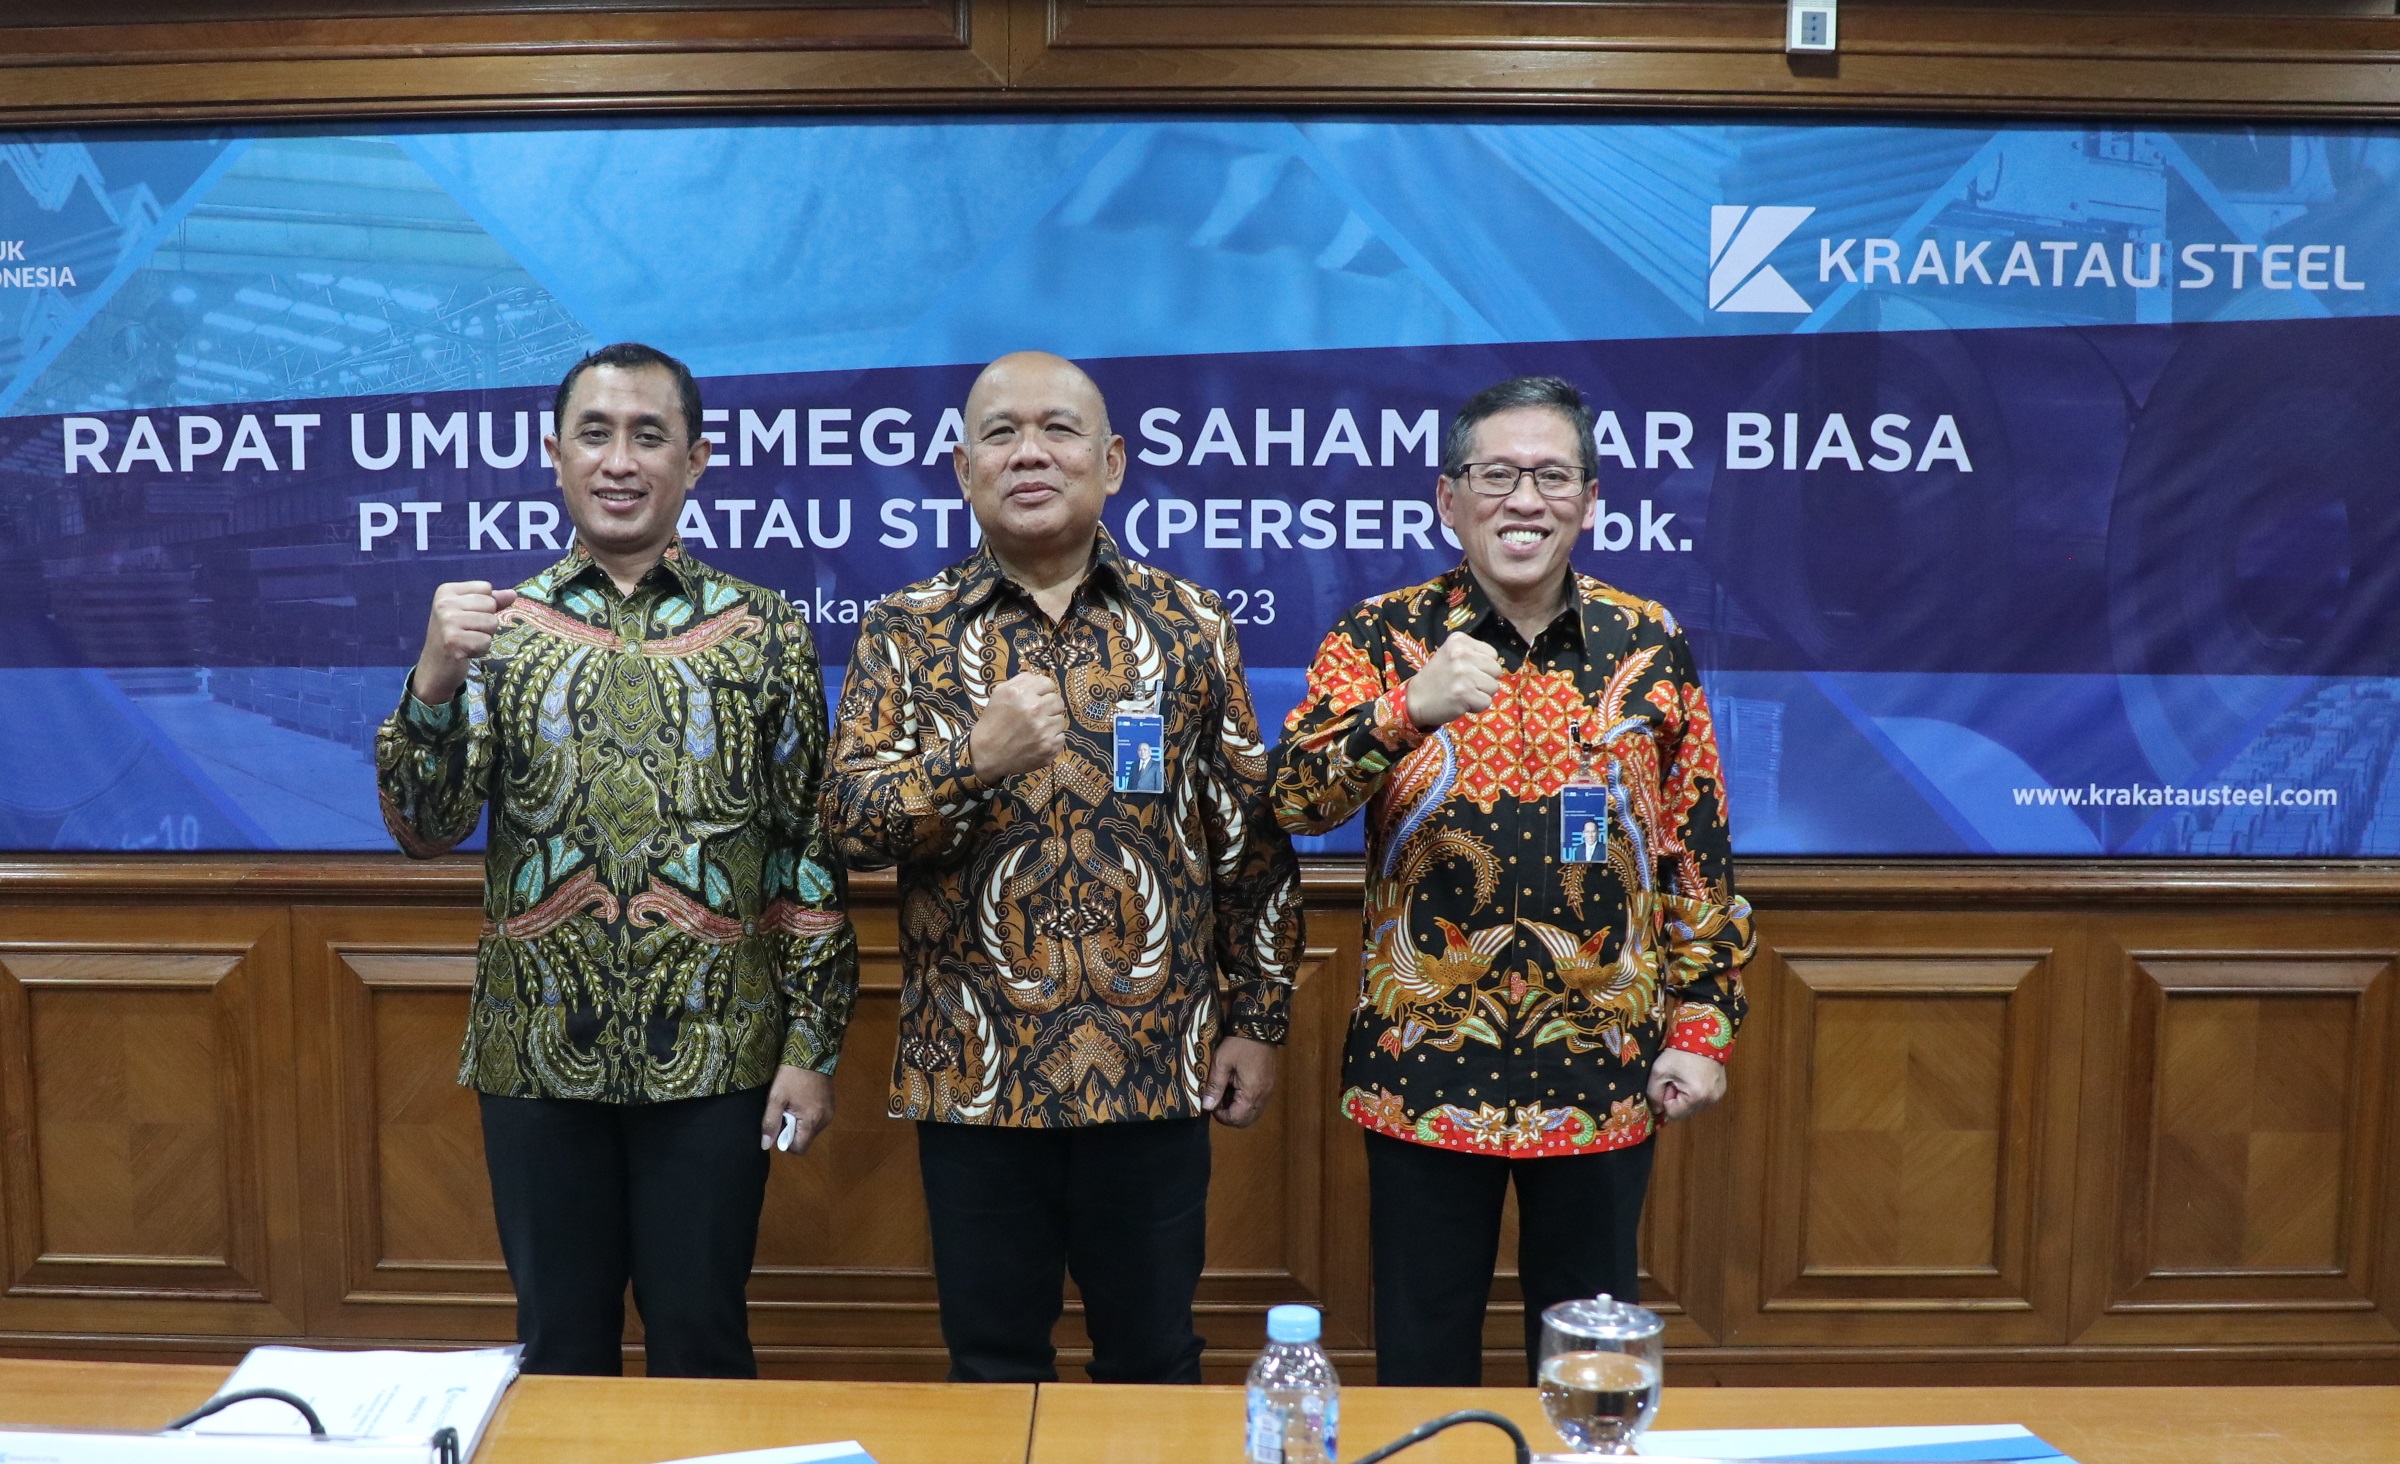 Purwono Widodo Gantikan Posisi Silmy Karim Sebagai Direktur Utama Krakatau Steel (KRAS)